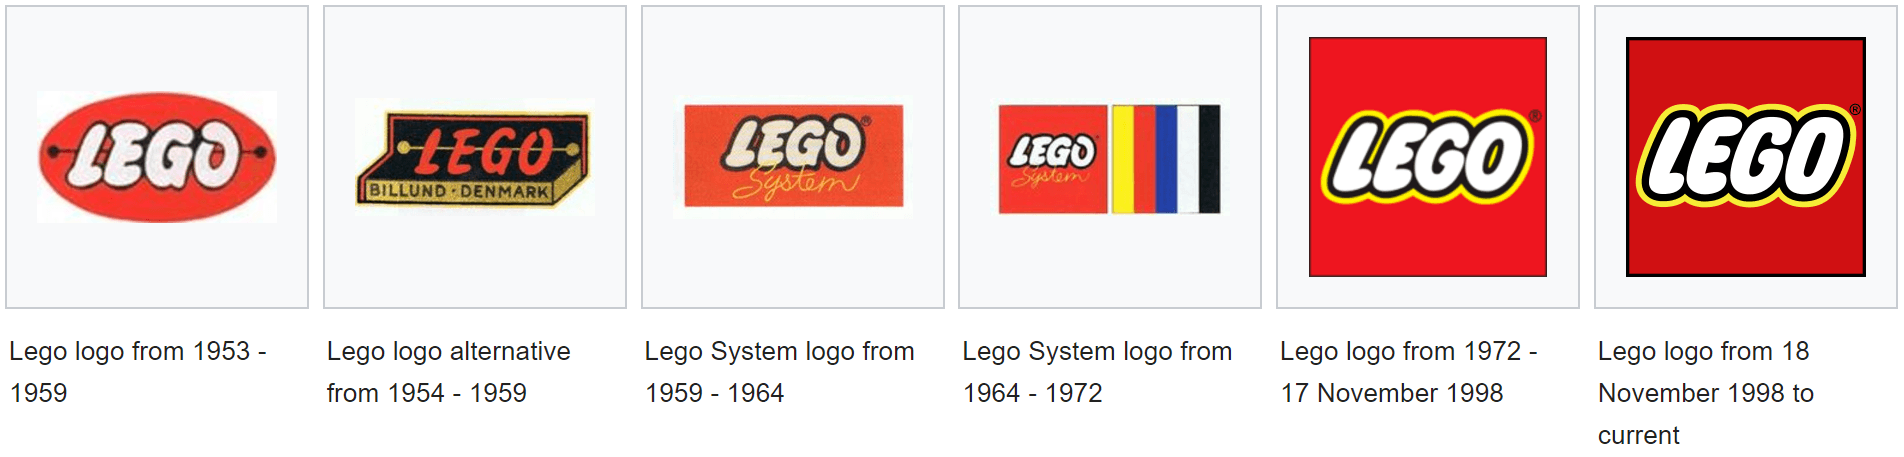 LEGO Logo - Lego Logo Design History and Evolution | LogoRealm.com